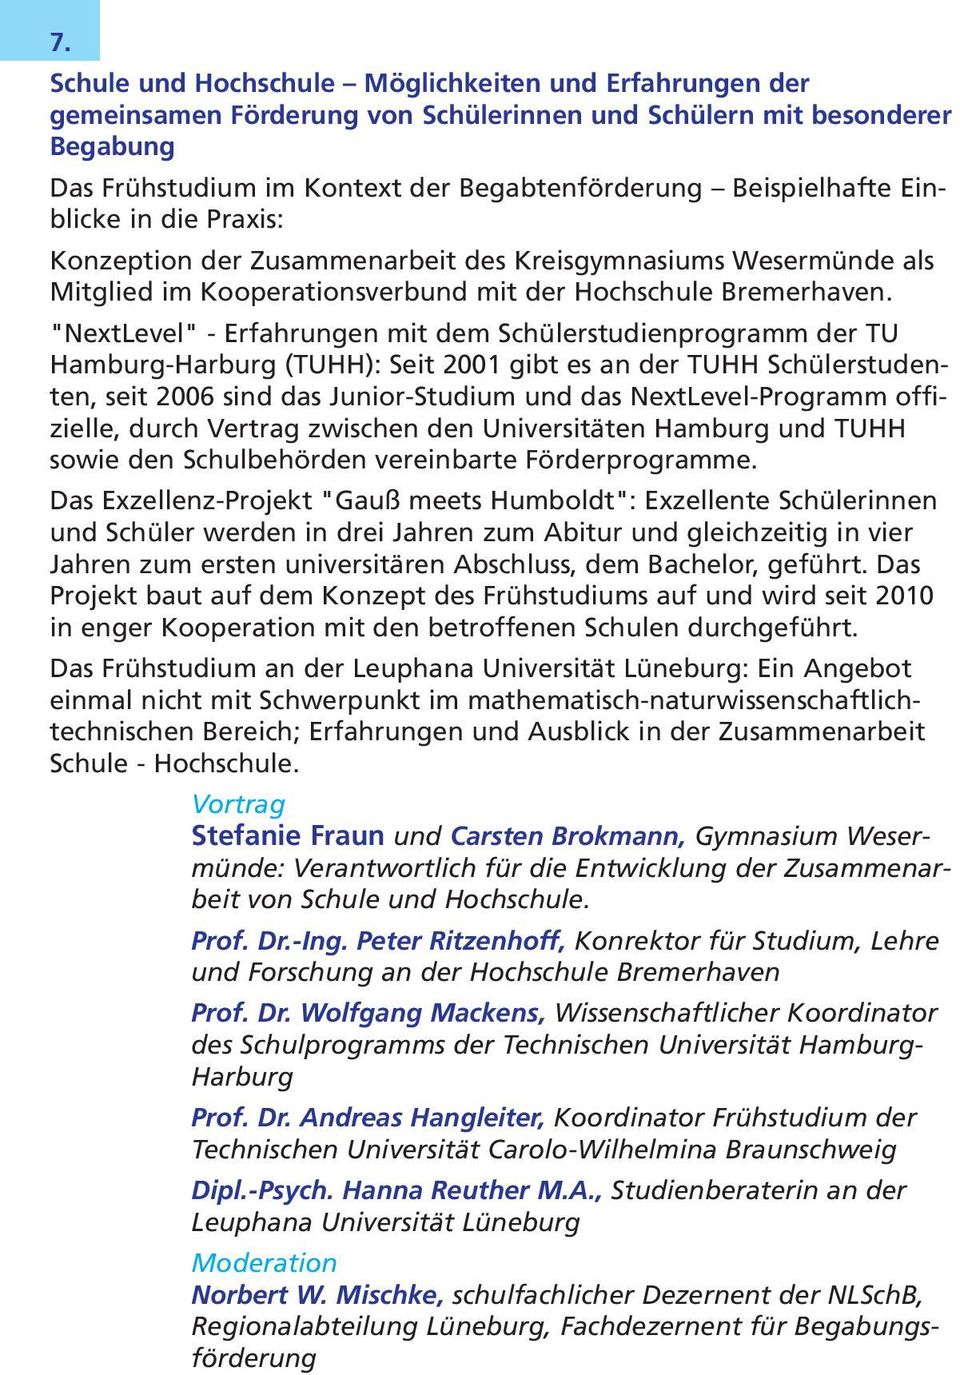 "NextLevel" - Erfahrungen mit dem Schülerstudienprogramm der TU Hamburg-Harburg (TUHH): Seit 2001 gibt es an der TUHH Schülerstudenten, seit 2006 sind das Junior-Studium und das NextLevel-Programm